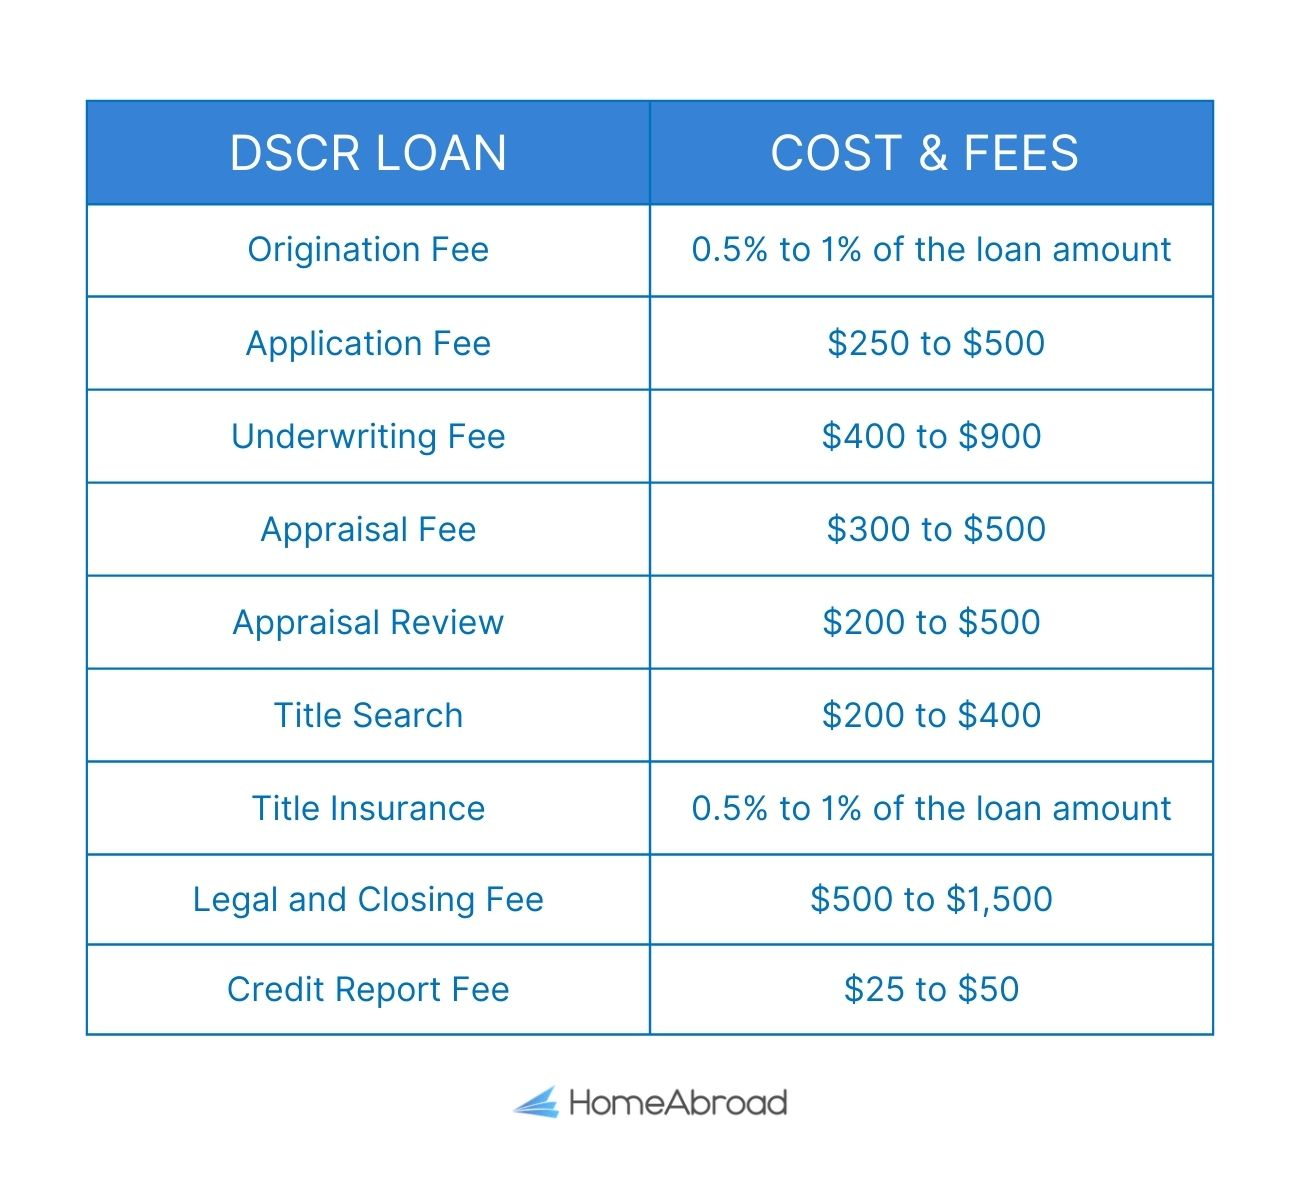 DSCR loan cost & fees